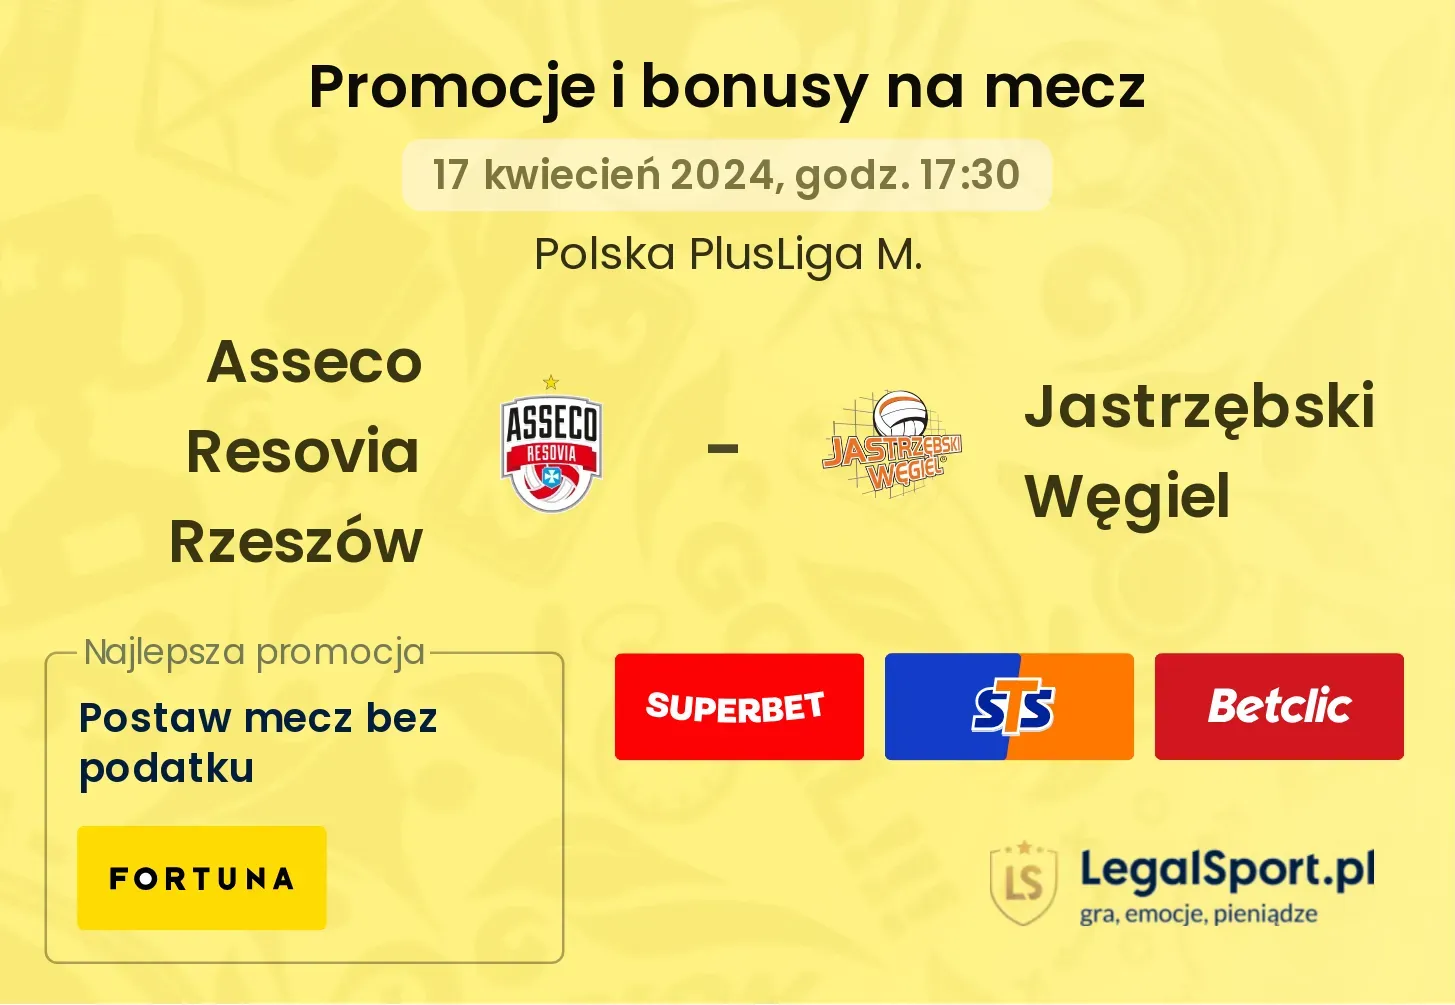 Asseco Resovia Rzeszów - Jastrzębski Węgiel promocje bonusy na mecz